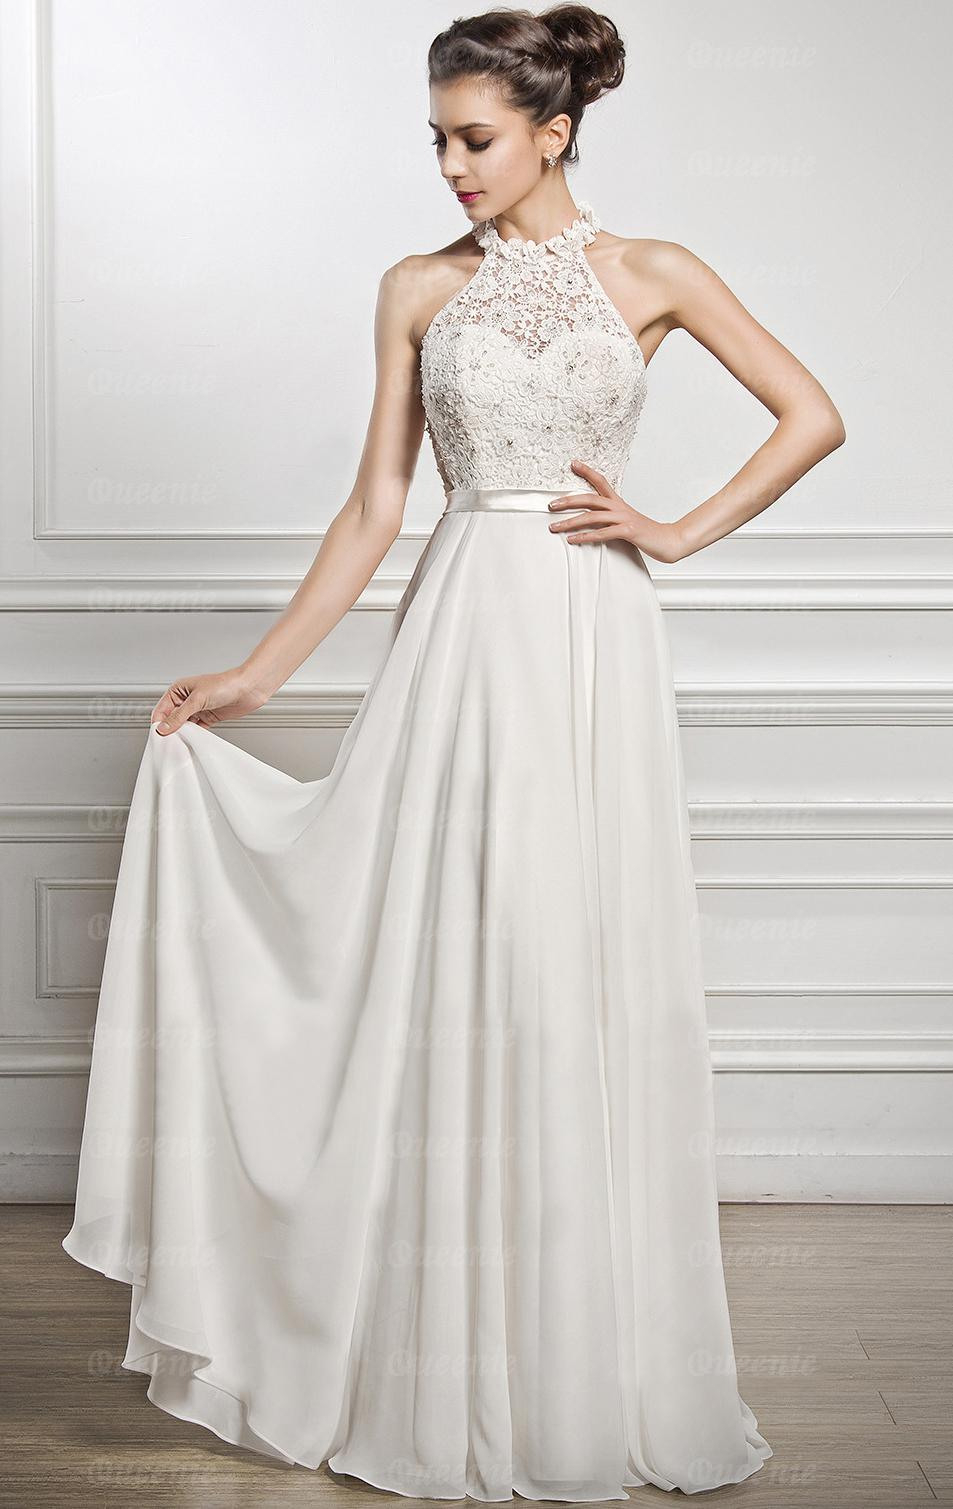 20 Schön Abendkleid In Weiß Vertrieb17 Elegant Abendkleid In Weiß Stylish